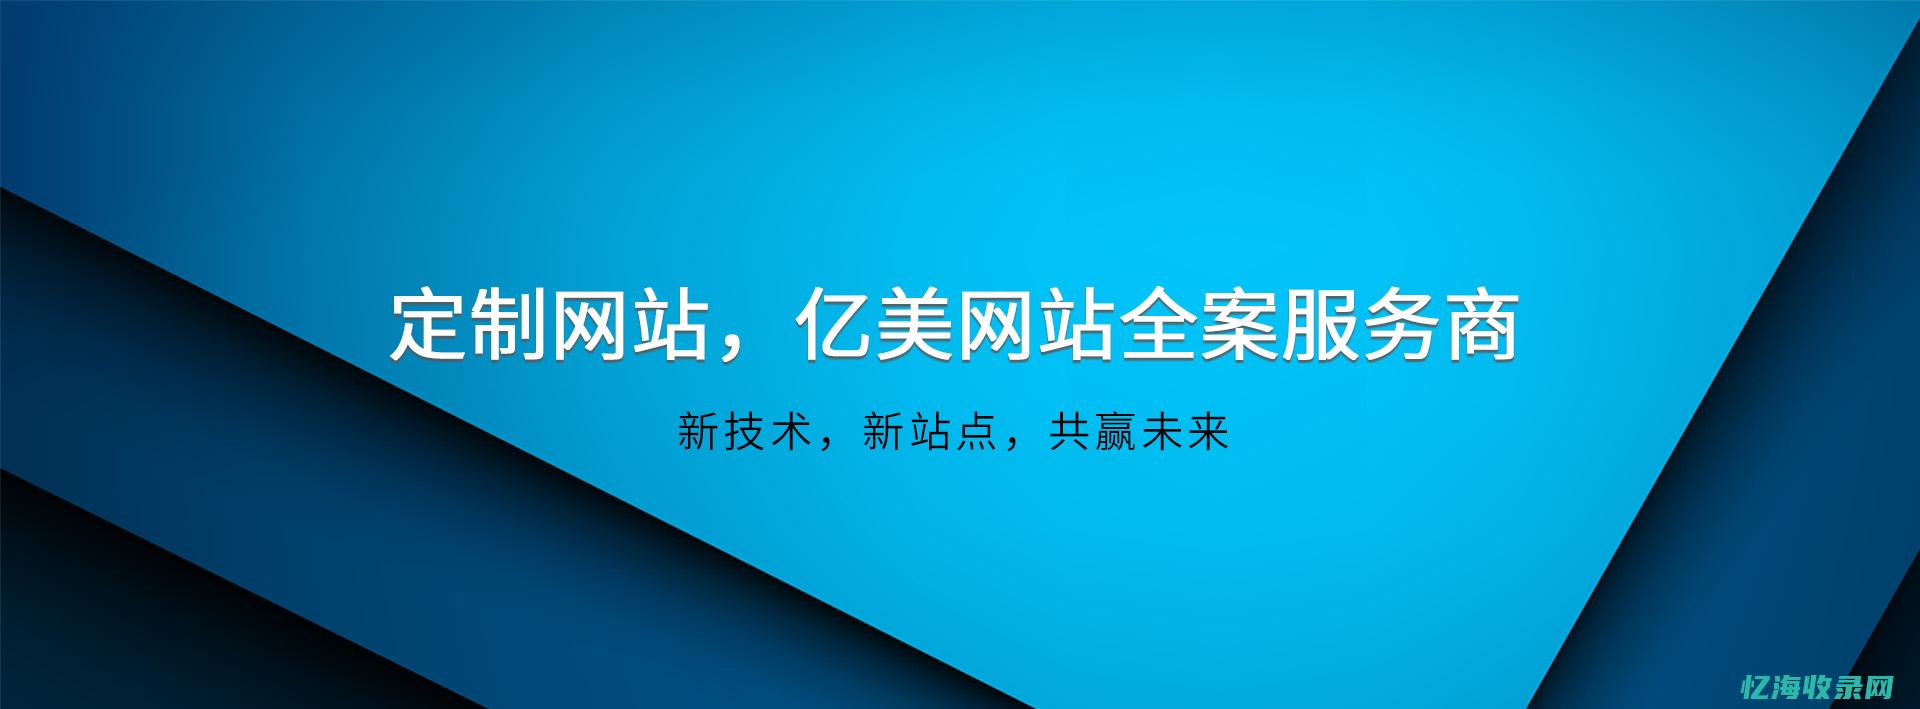 北京网站优化公司：专业优化团队，为您的网站量身定制持续增长的发展计划 (北京网站优化公司wyhseo)